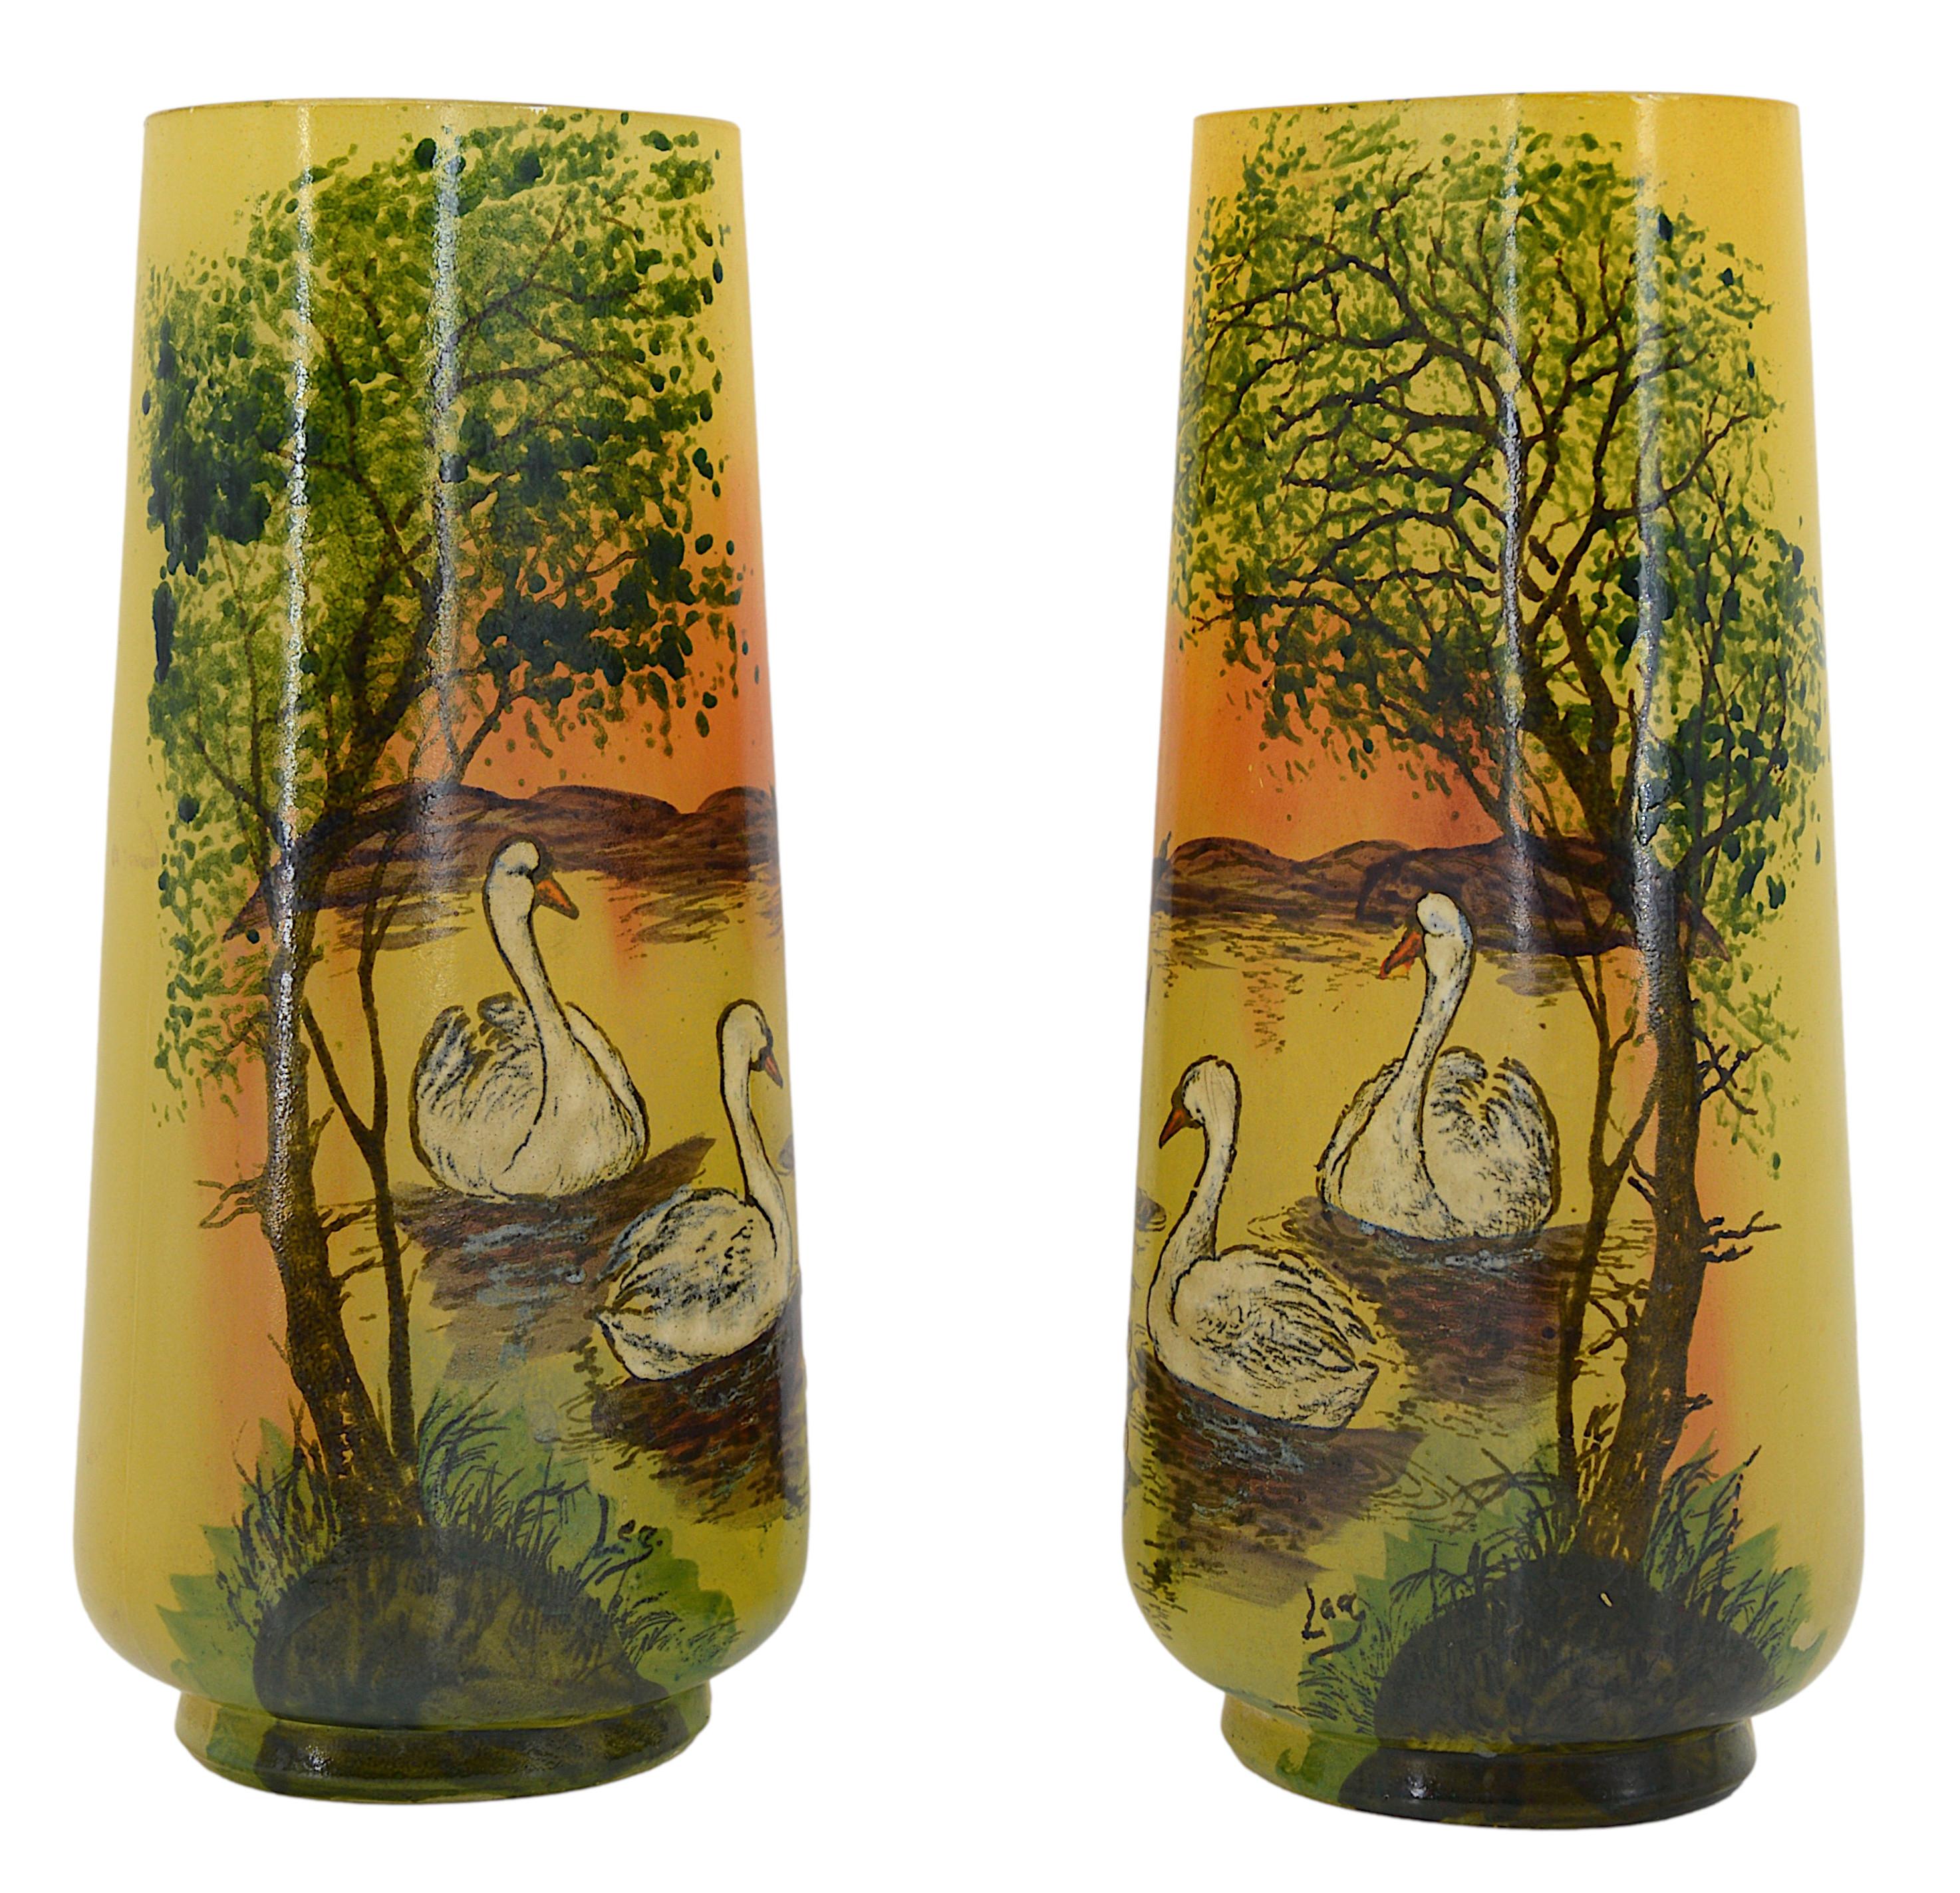 Paar französische Art-Déco-Vasen von François-Théodore LEGRAS, Frankreich, 1920er Jahre. Paar Glasvasen mit emailliertem Dekor von zwei Schwänen auf jeder Vase. Ausstattung von Angesicht zu Angesicht. Maße: Jedes - Höhe: 27 cm (10,6